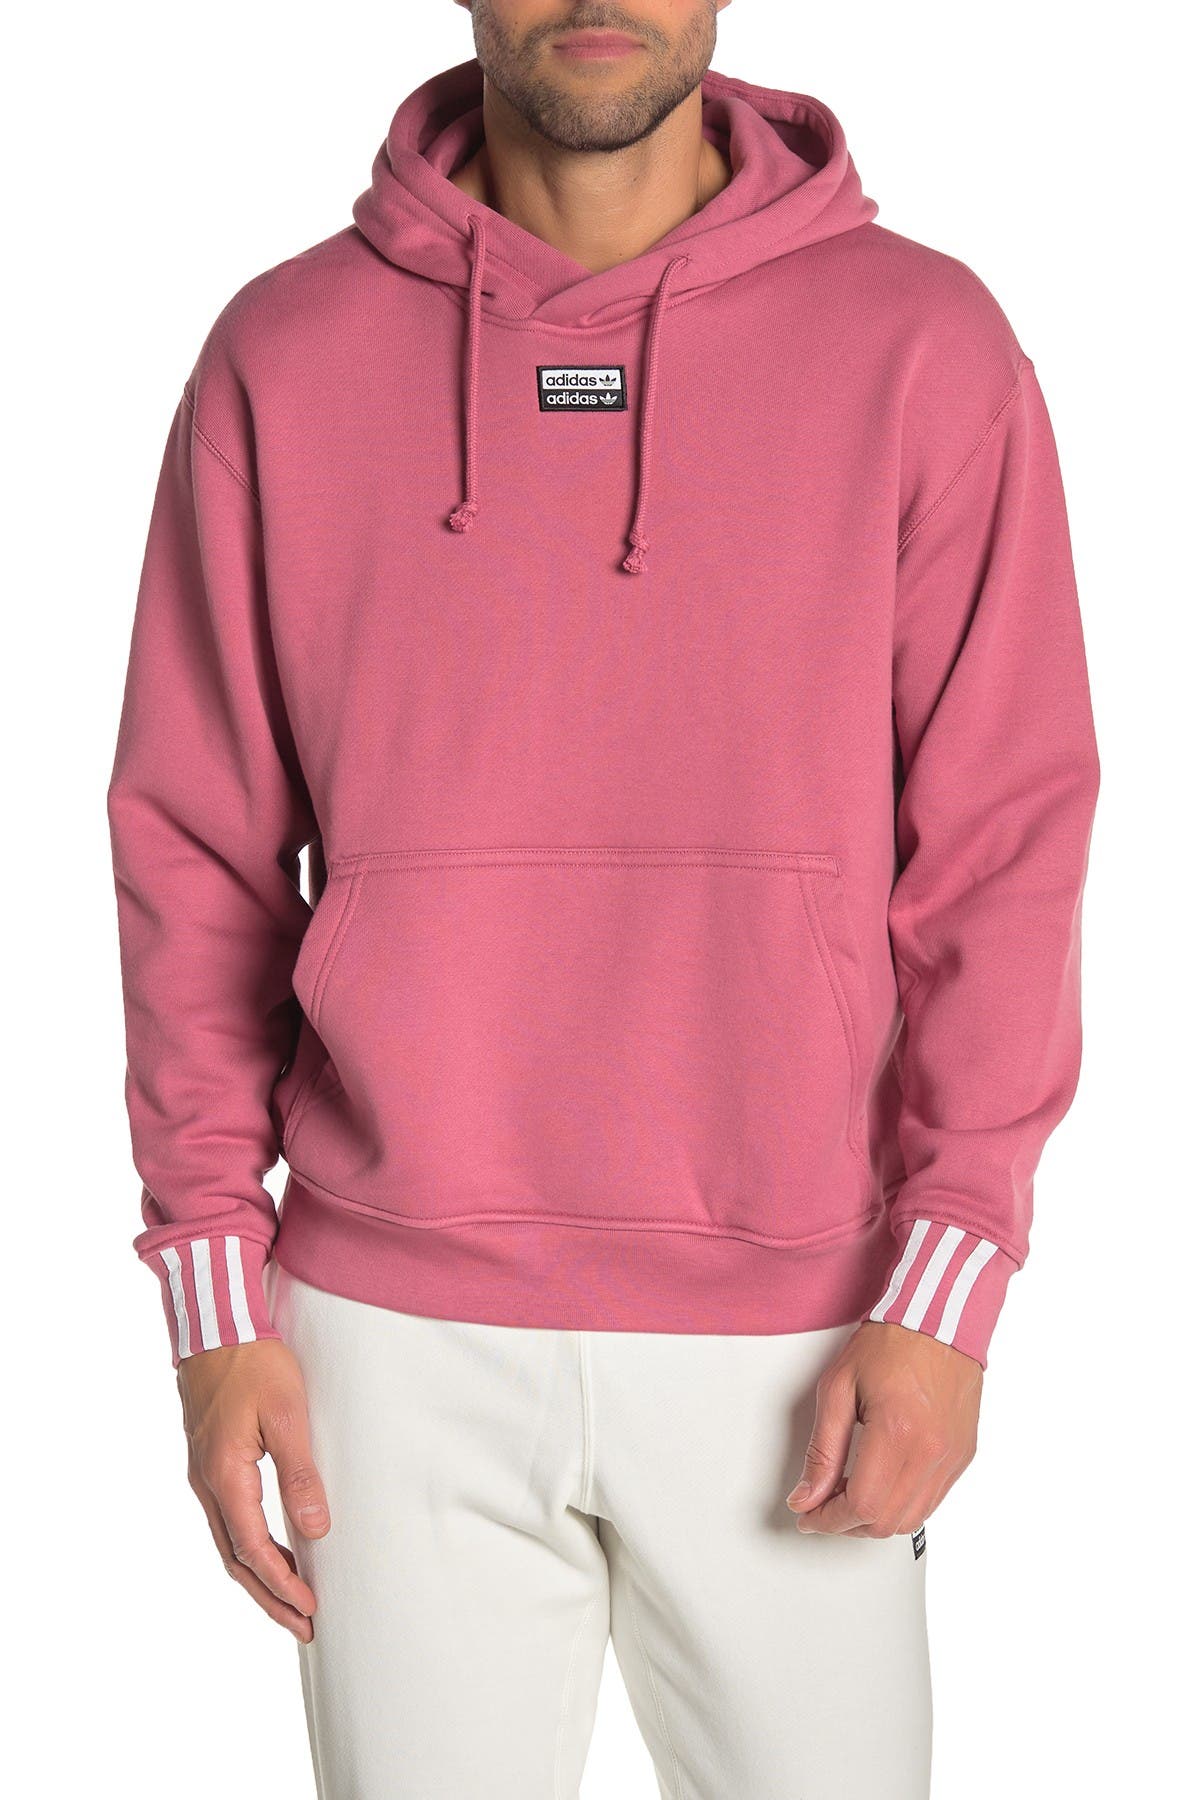 adidas ryv hoodie pink